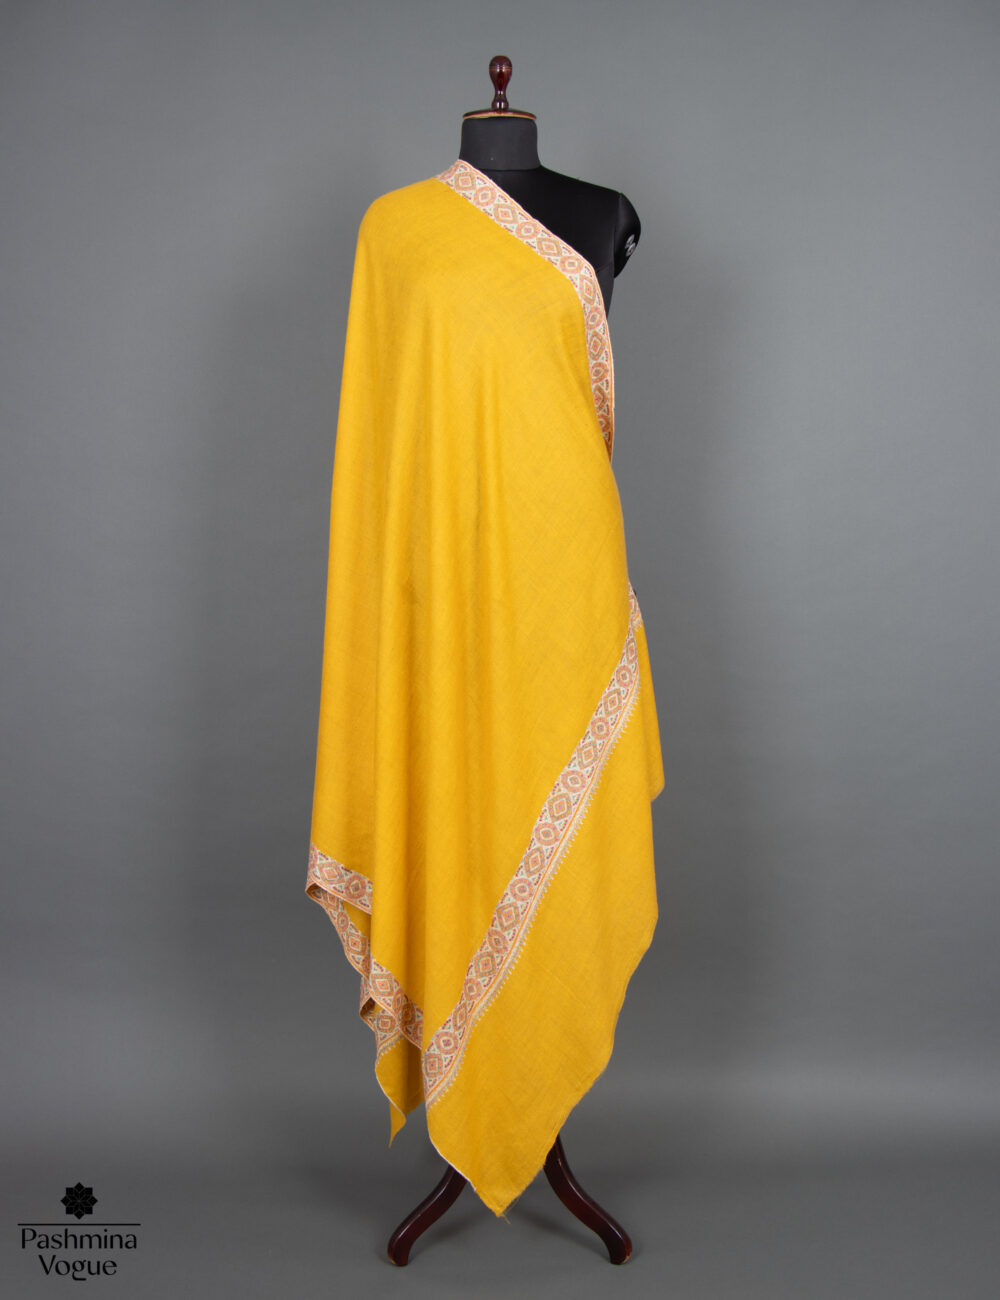 shawls-online-shopping-sri-lanka